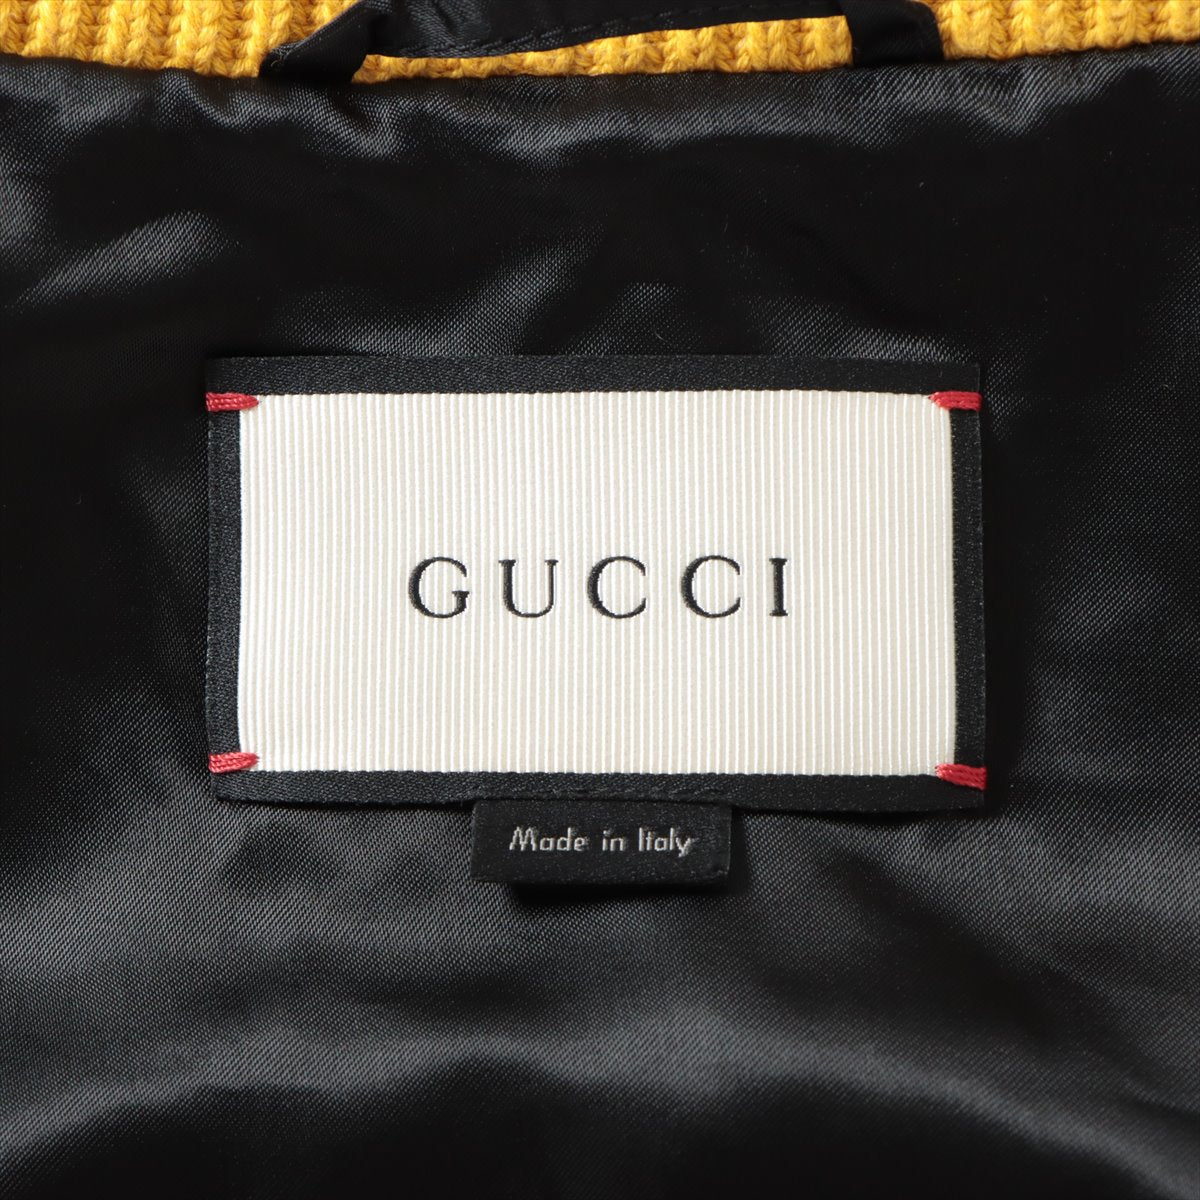 Gucci Rayon × Silk Stadium jumper 52 Men's Black x Navy  429485 2016 Embroidery Souvenir Jacket embroidery souvenir